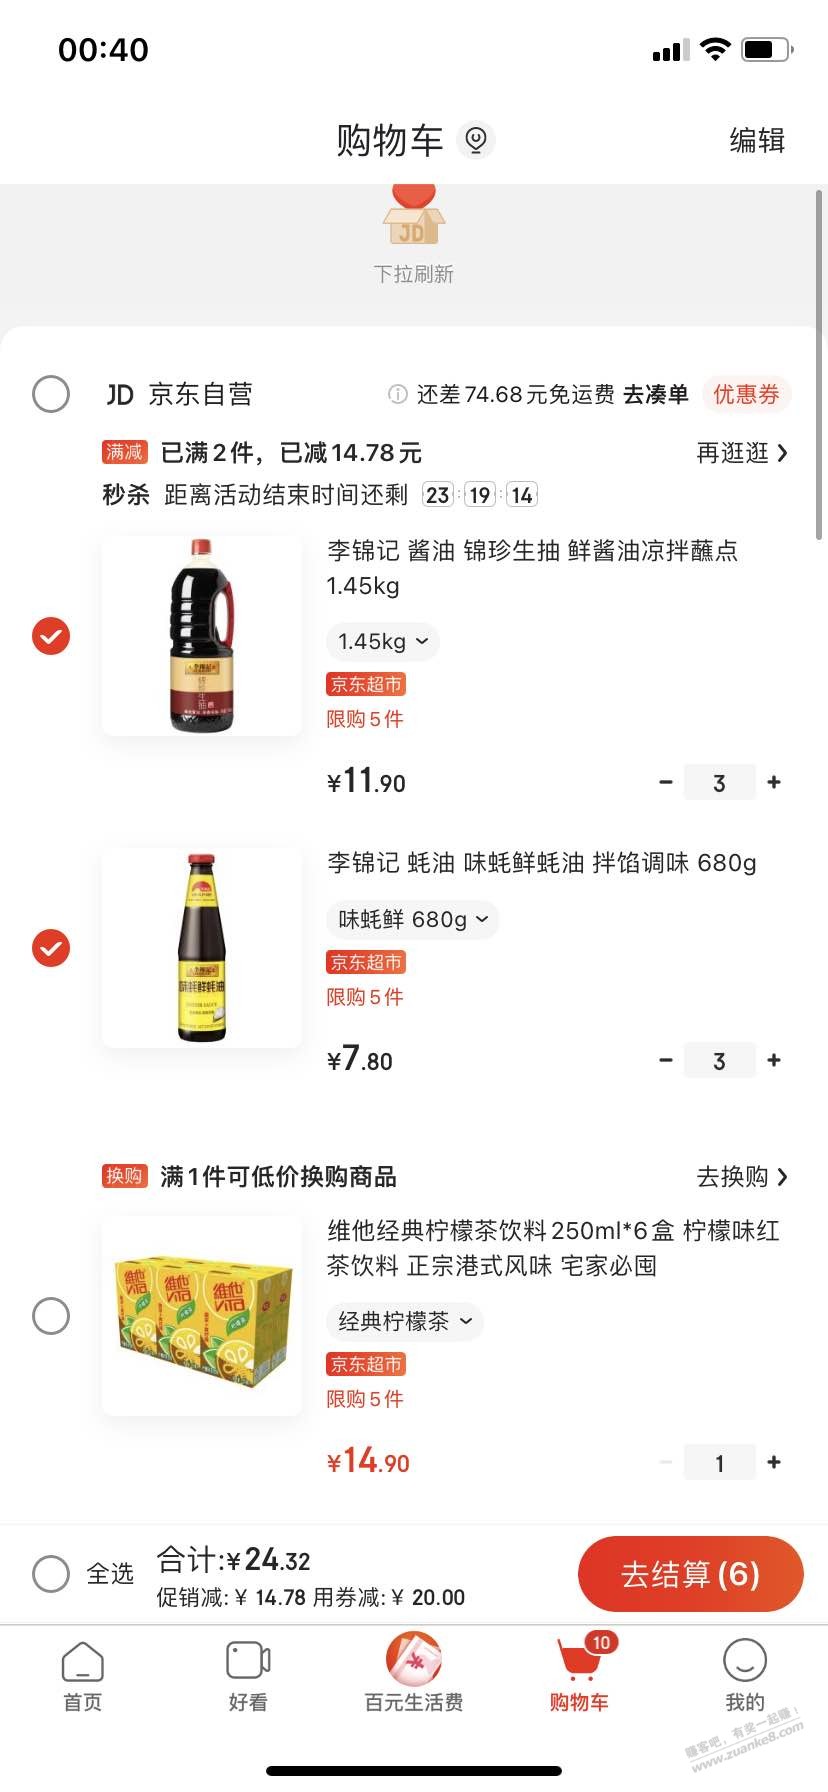 59-20好价作业-酱油、蚝油-惠小助(52huixz.com)